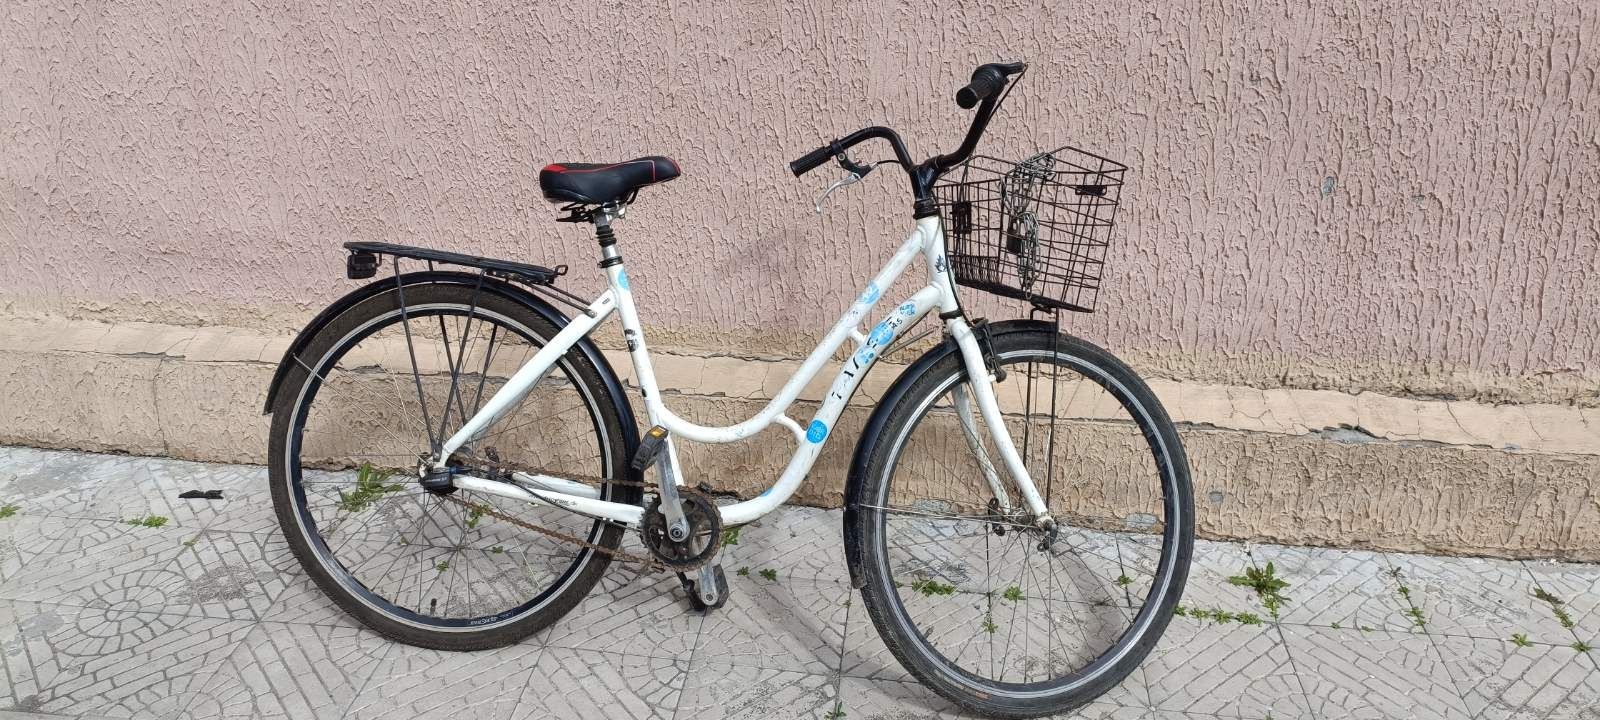 Велосипед немецкий, алюминиевый.